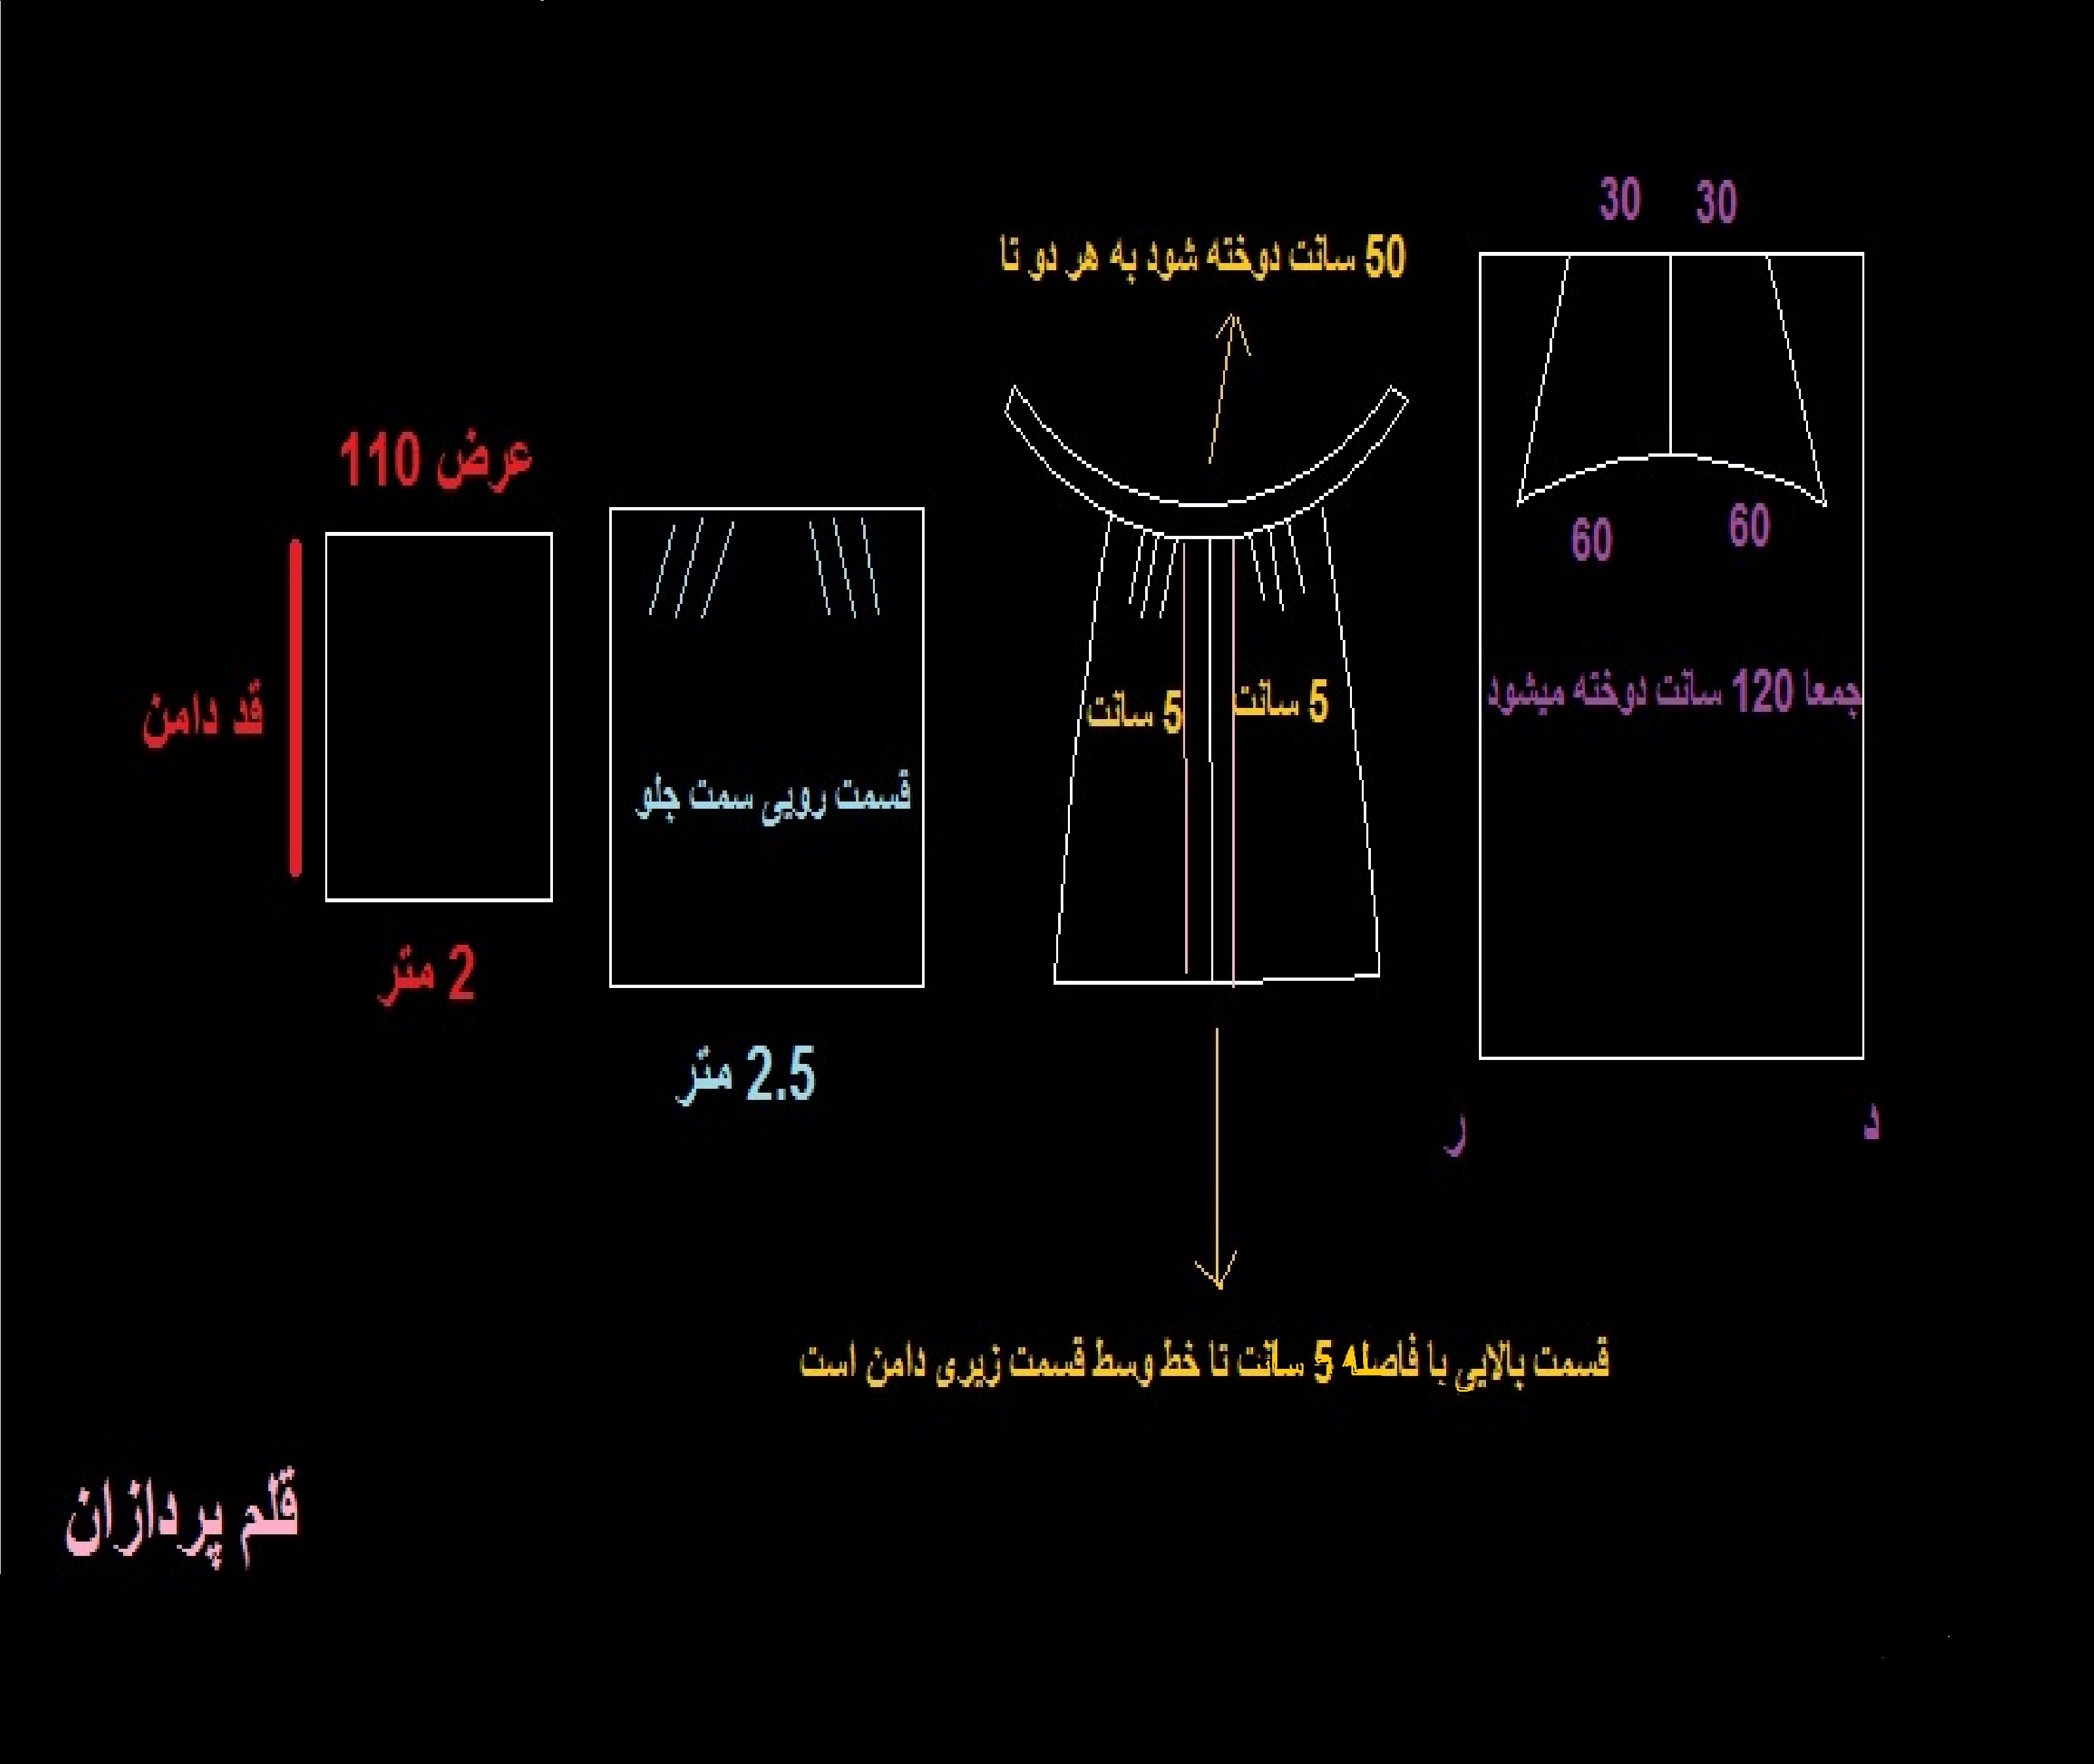 آموزش دوخت چادر قاجاری